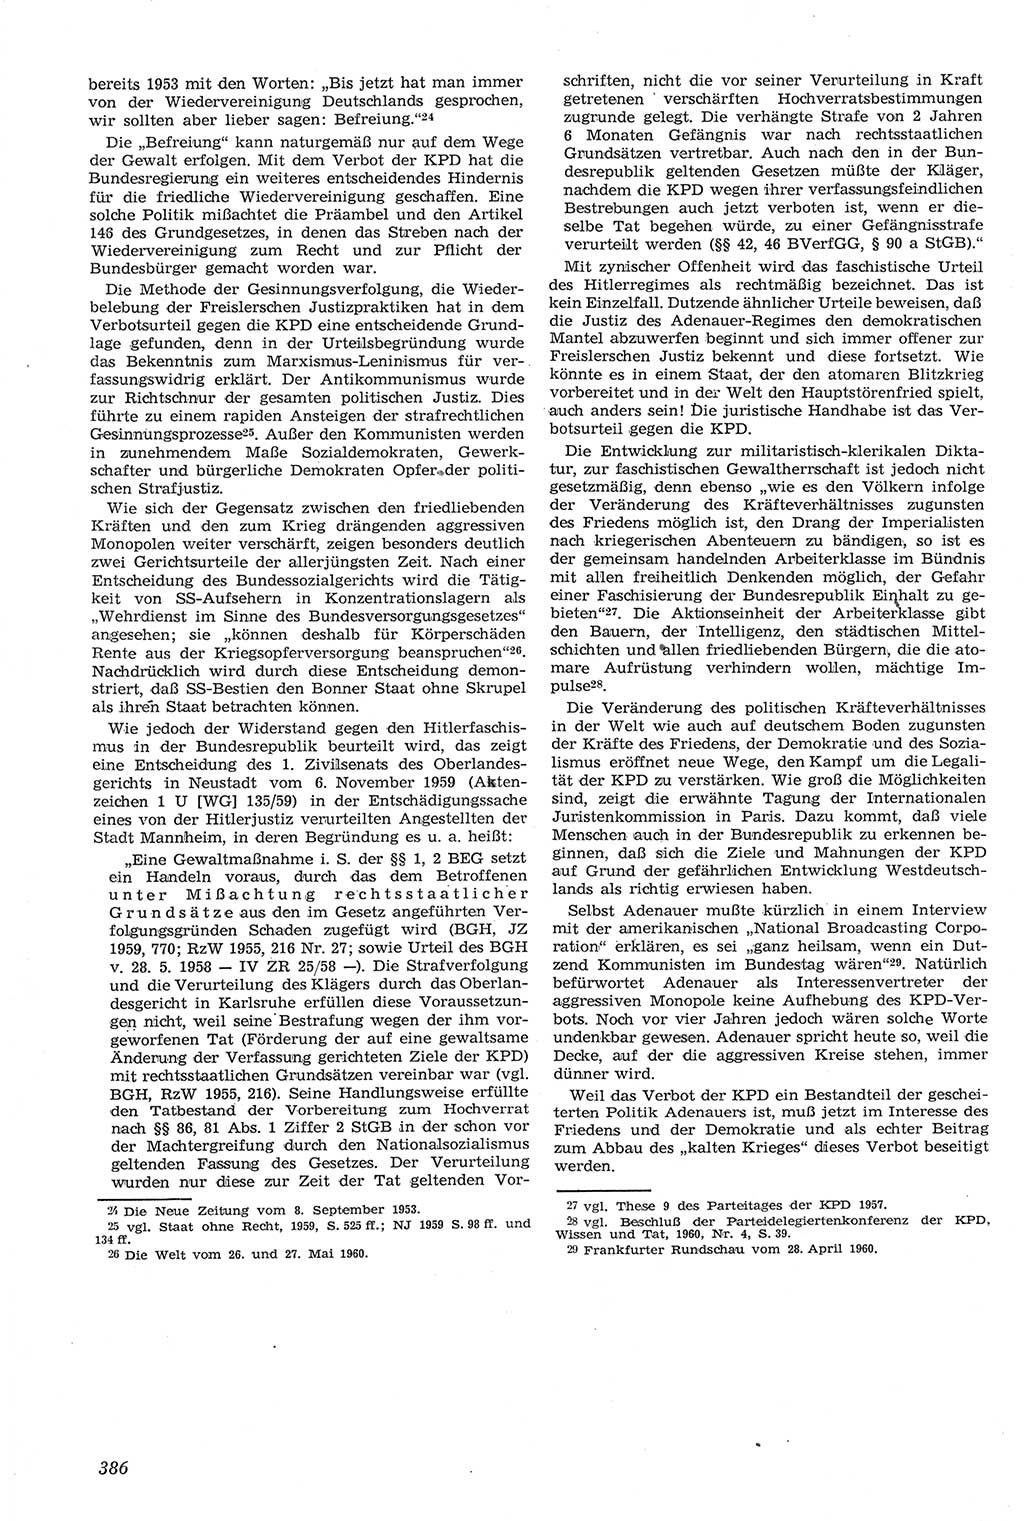 Neue Justiz (NJ), Zeitschrift für Recht und Rechtswissenschaft [Deutsche Demokratische Republik (DDR)], 14. Jahrgang 1960, Seite 386 (NJ DDR 1960, S. 386)